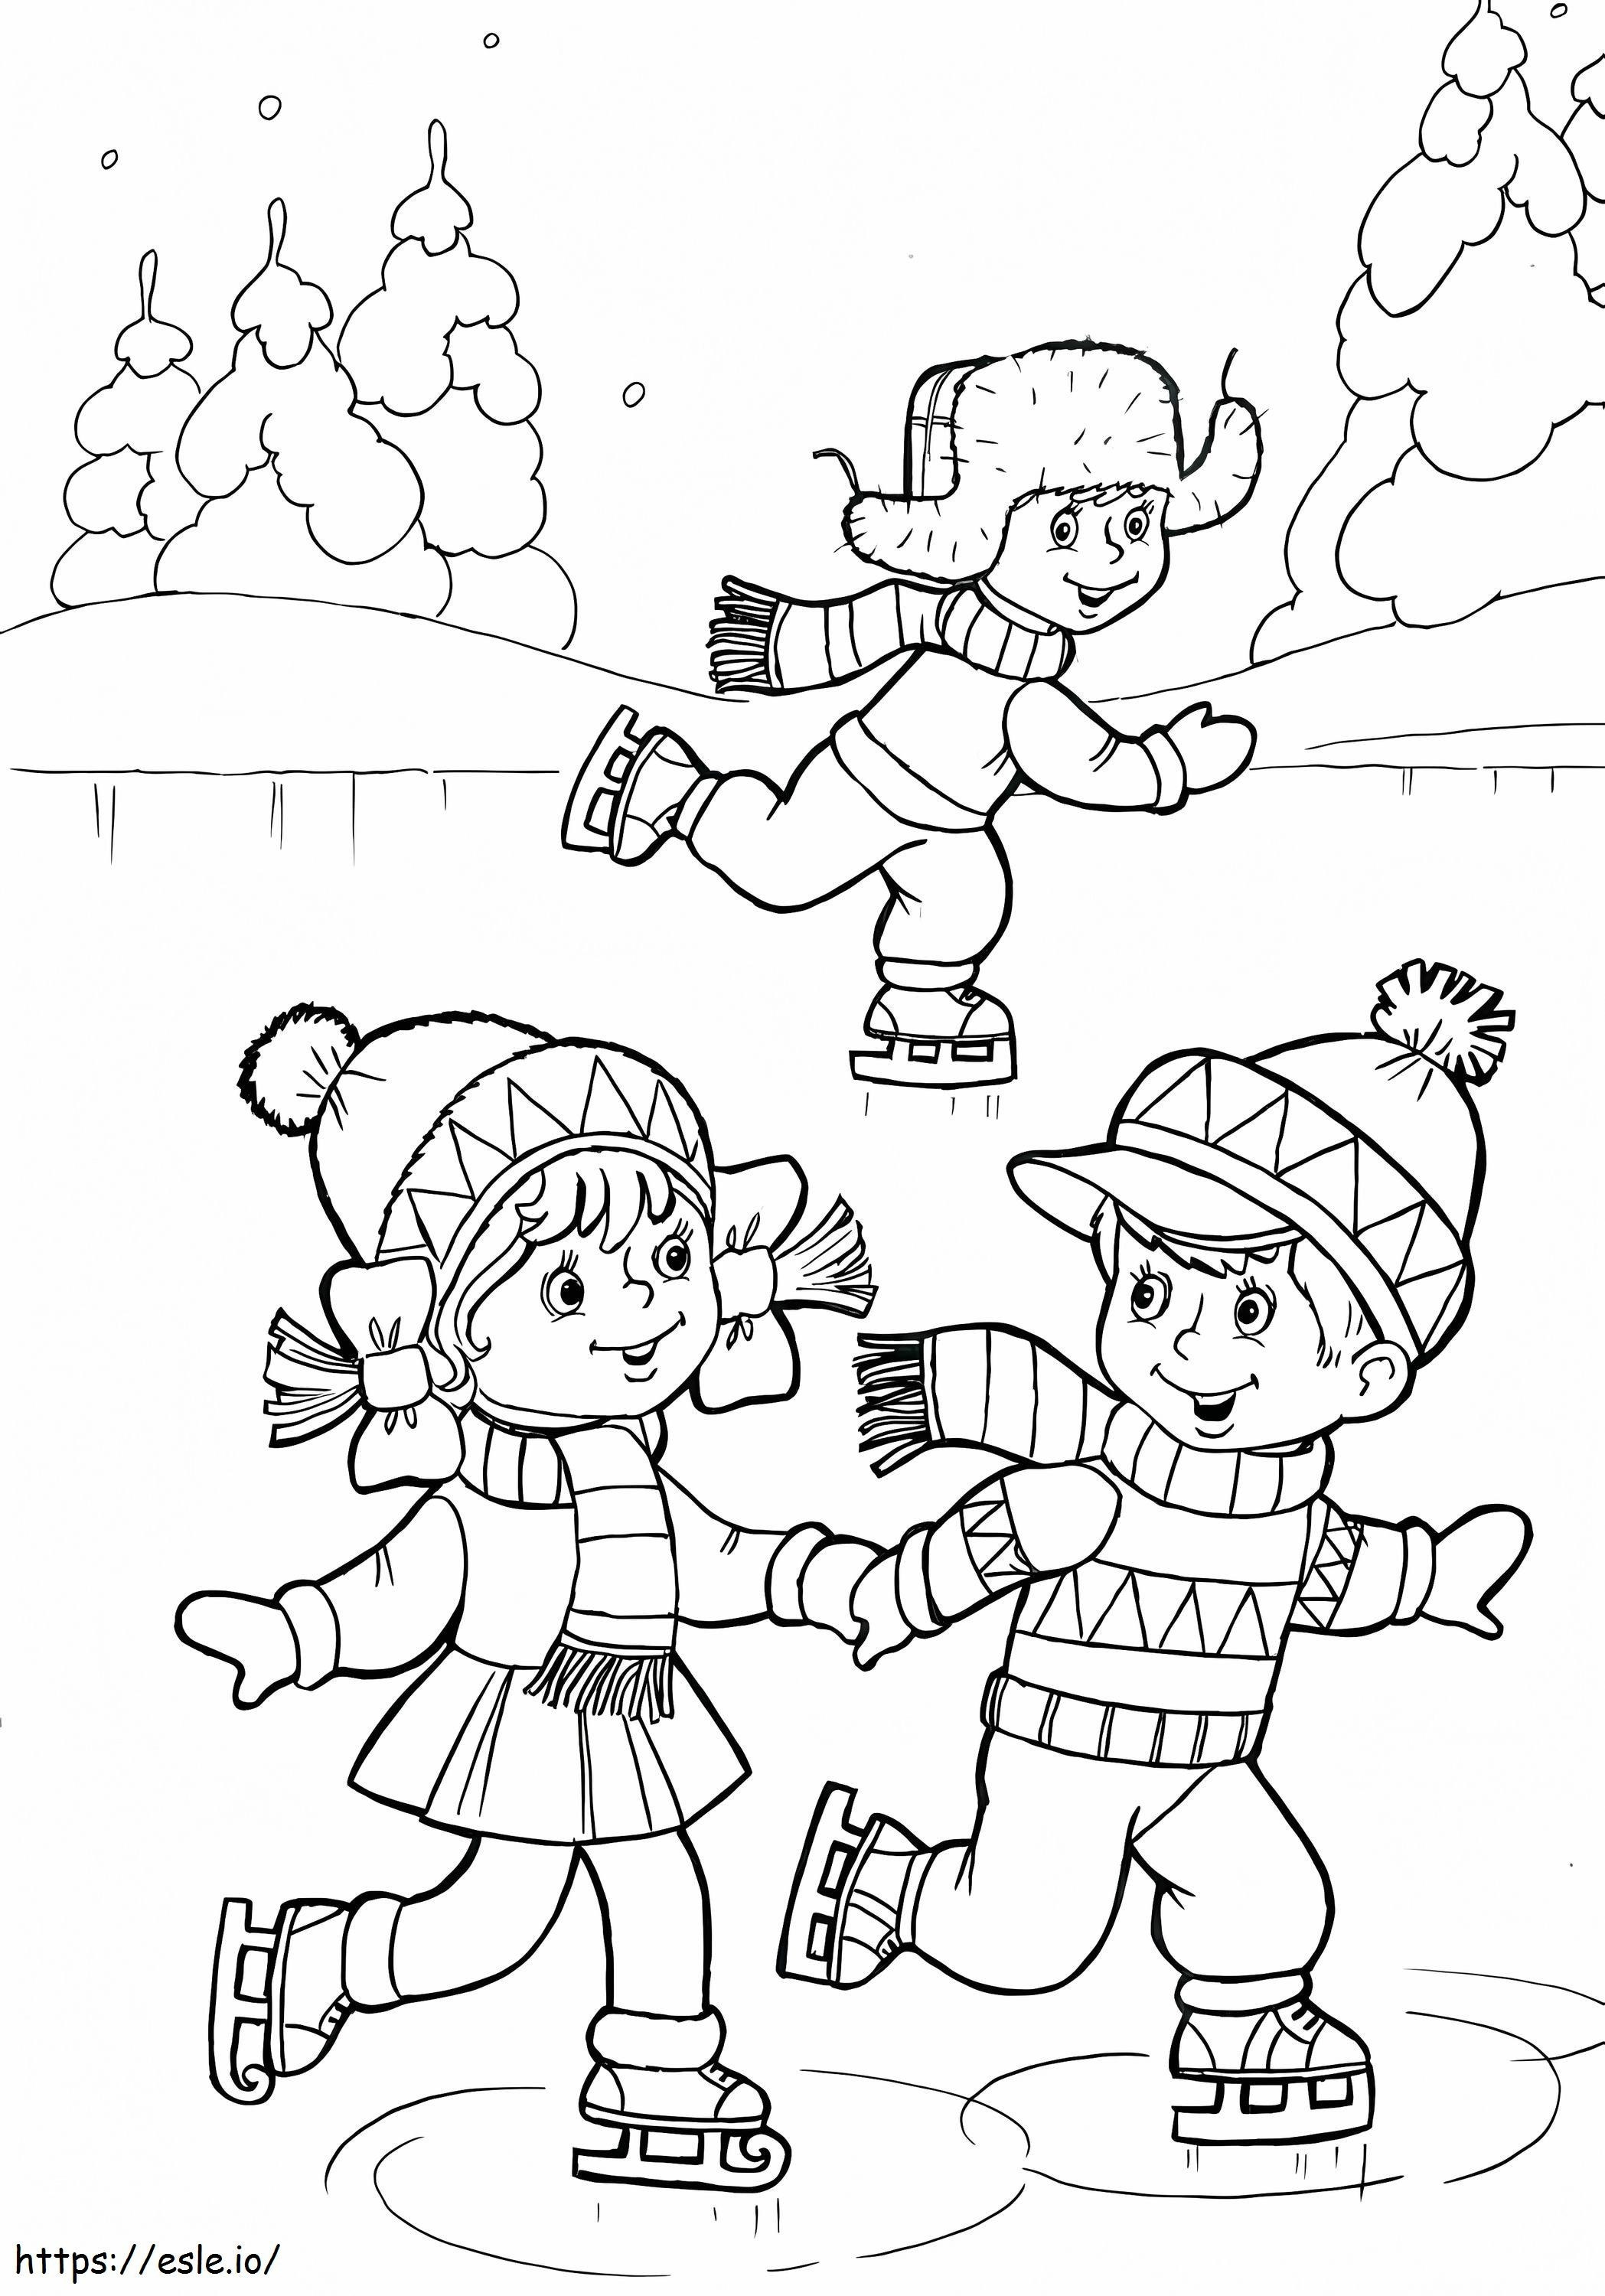 Trei copii care joacă patinaj de colorat